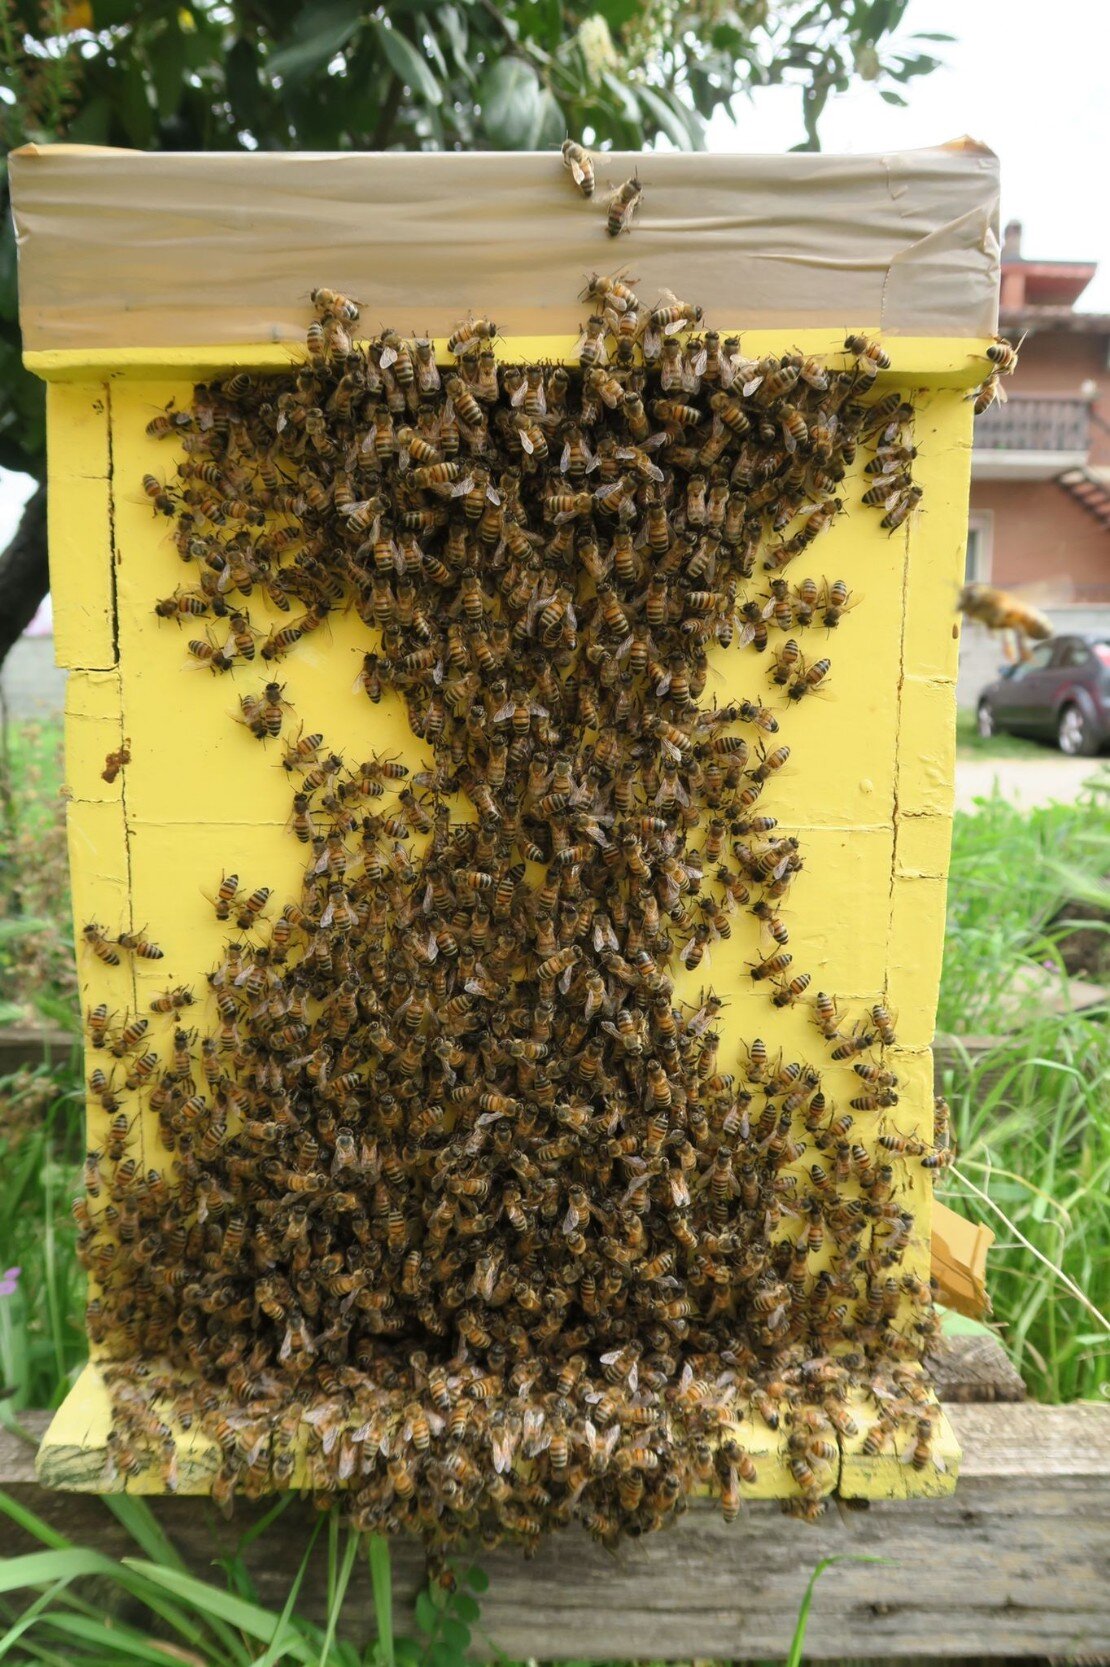 recupero sciami apicoltori